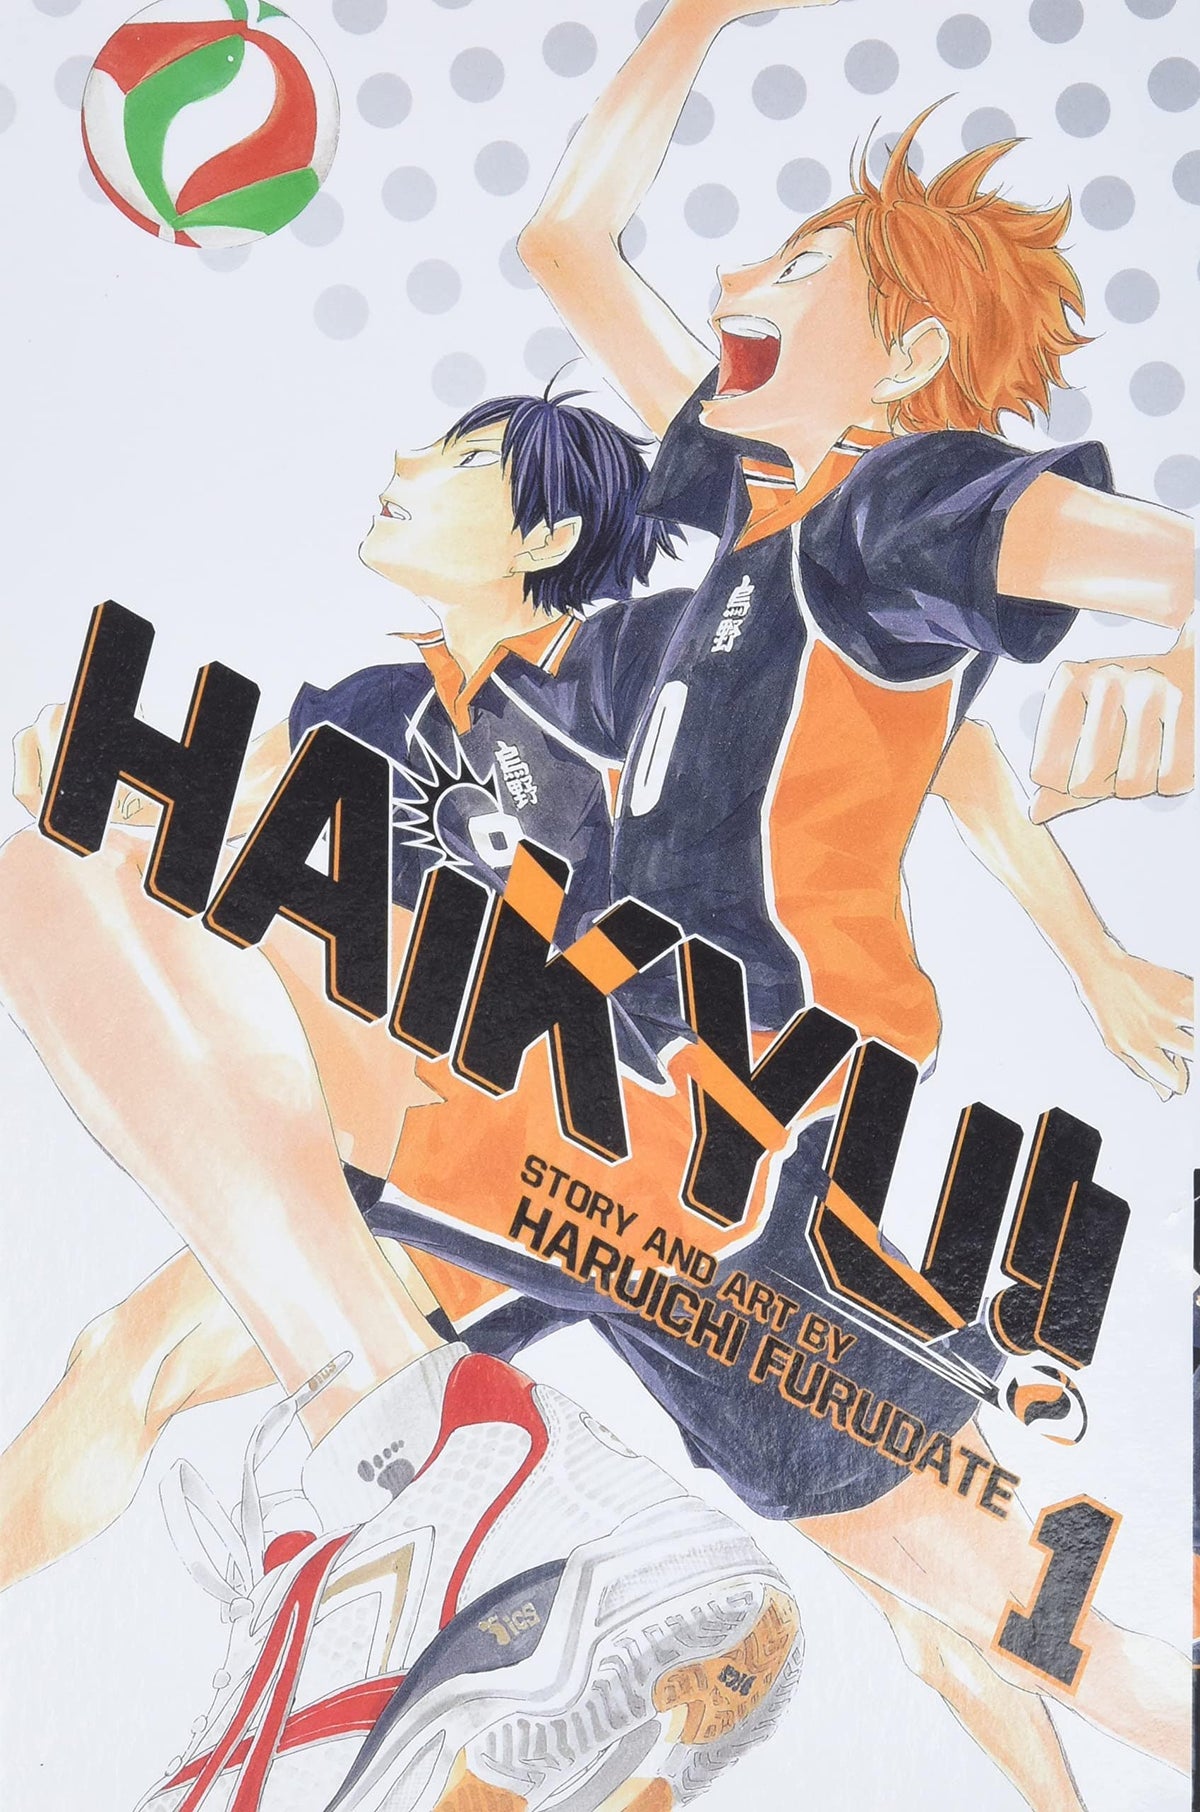 Haikyu!! Vol. 1 - Third Eye